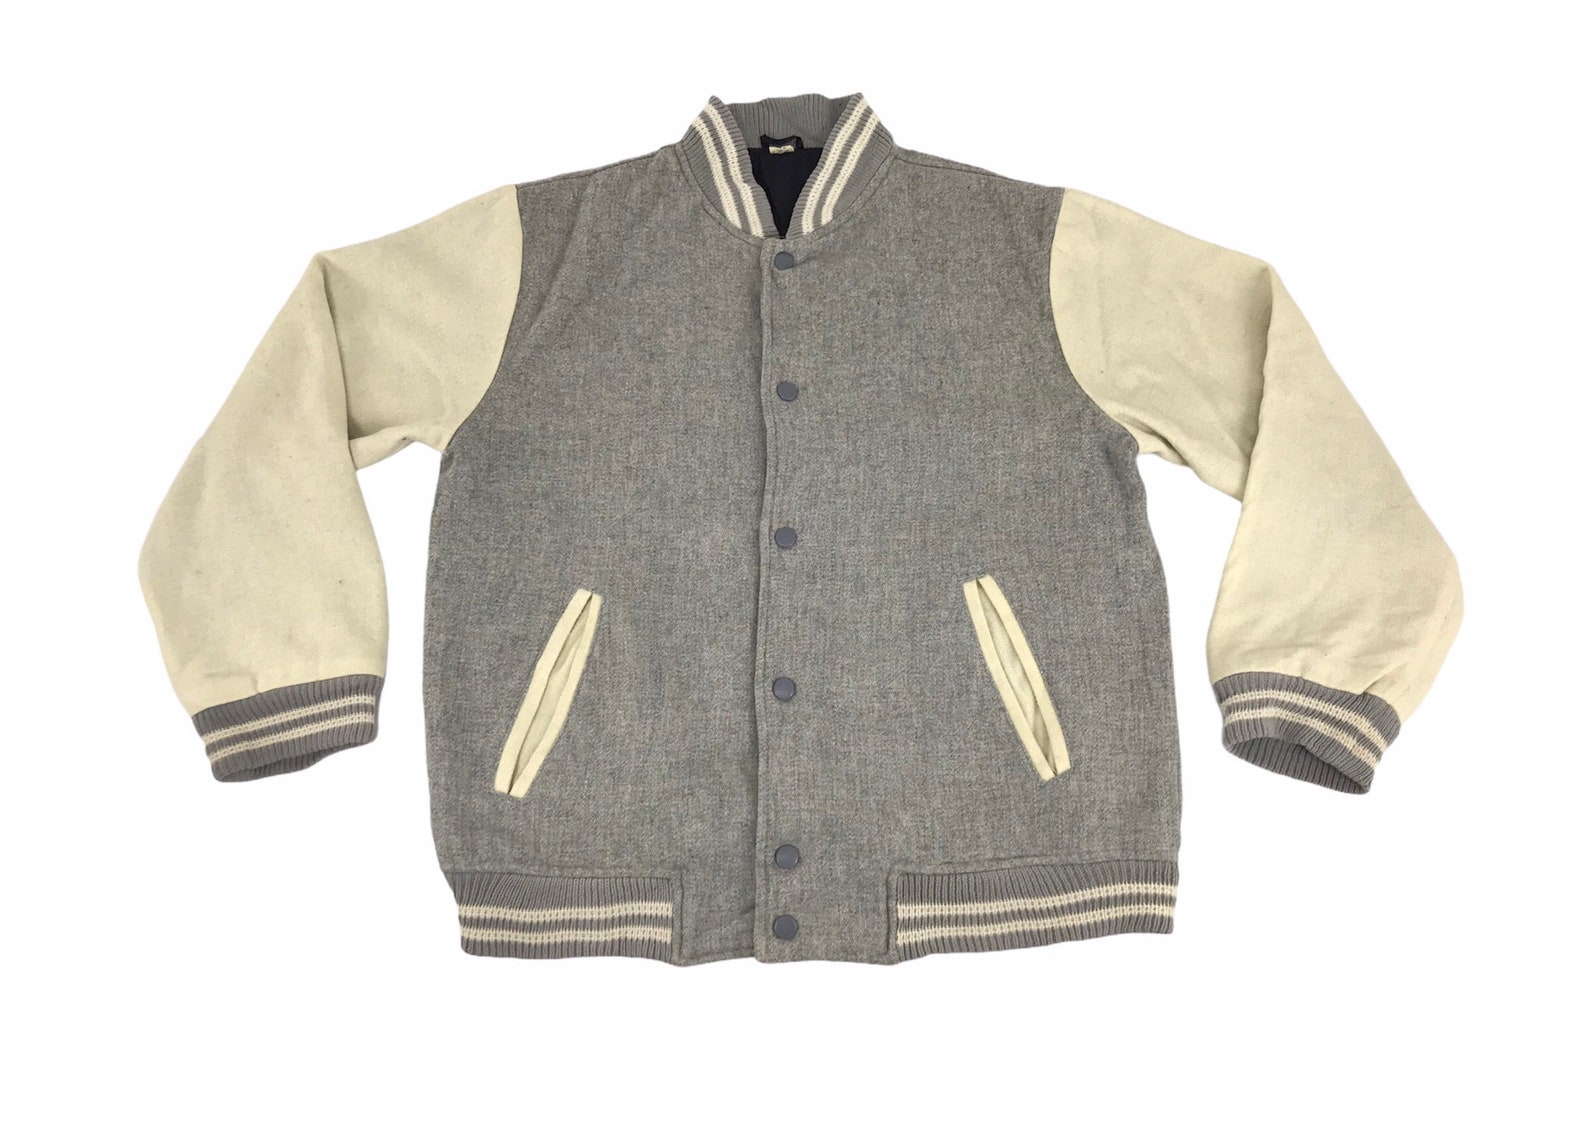 Vintage Japanese Brand Simple Varsity Jacket Wool Quilted | Etsy